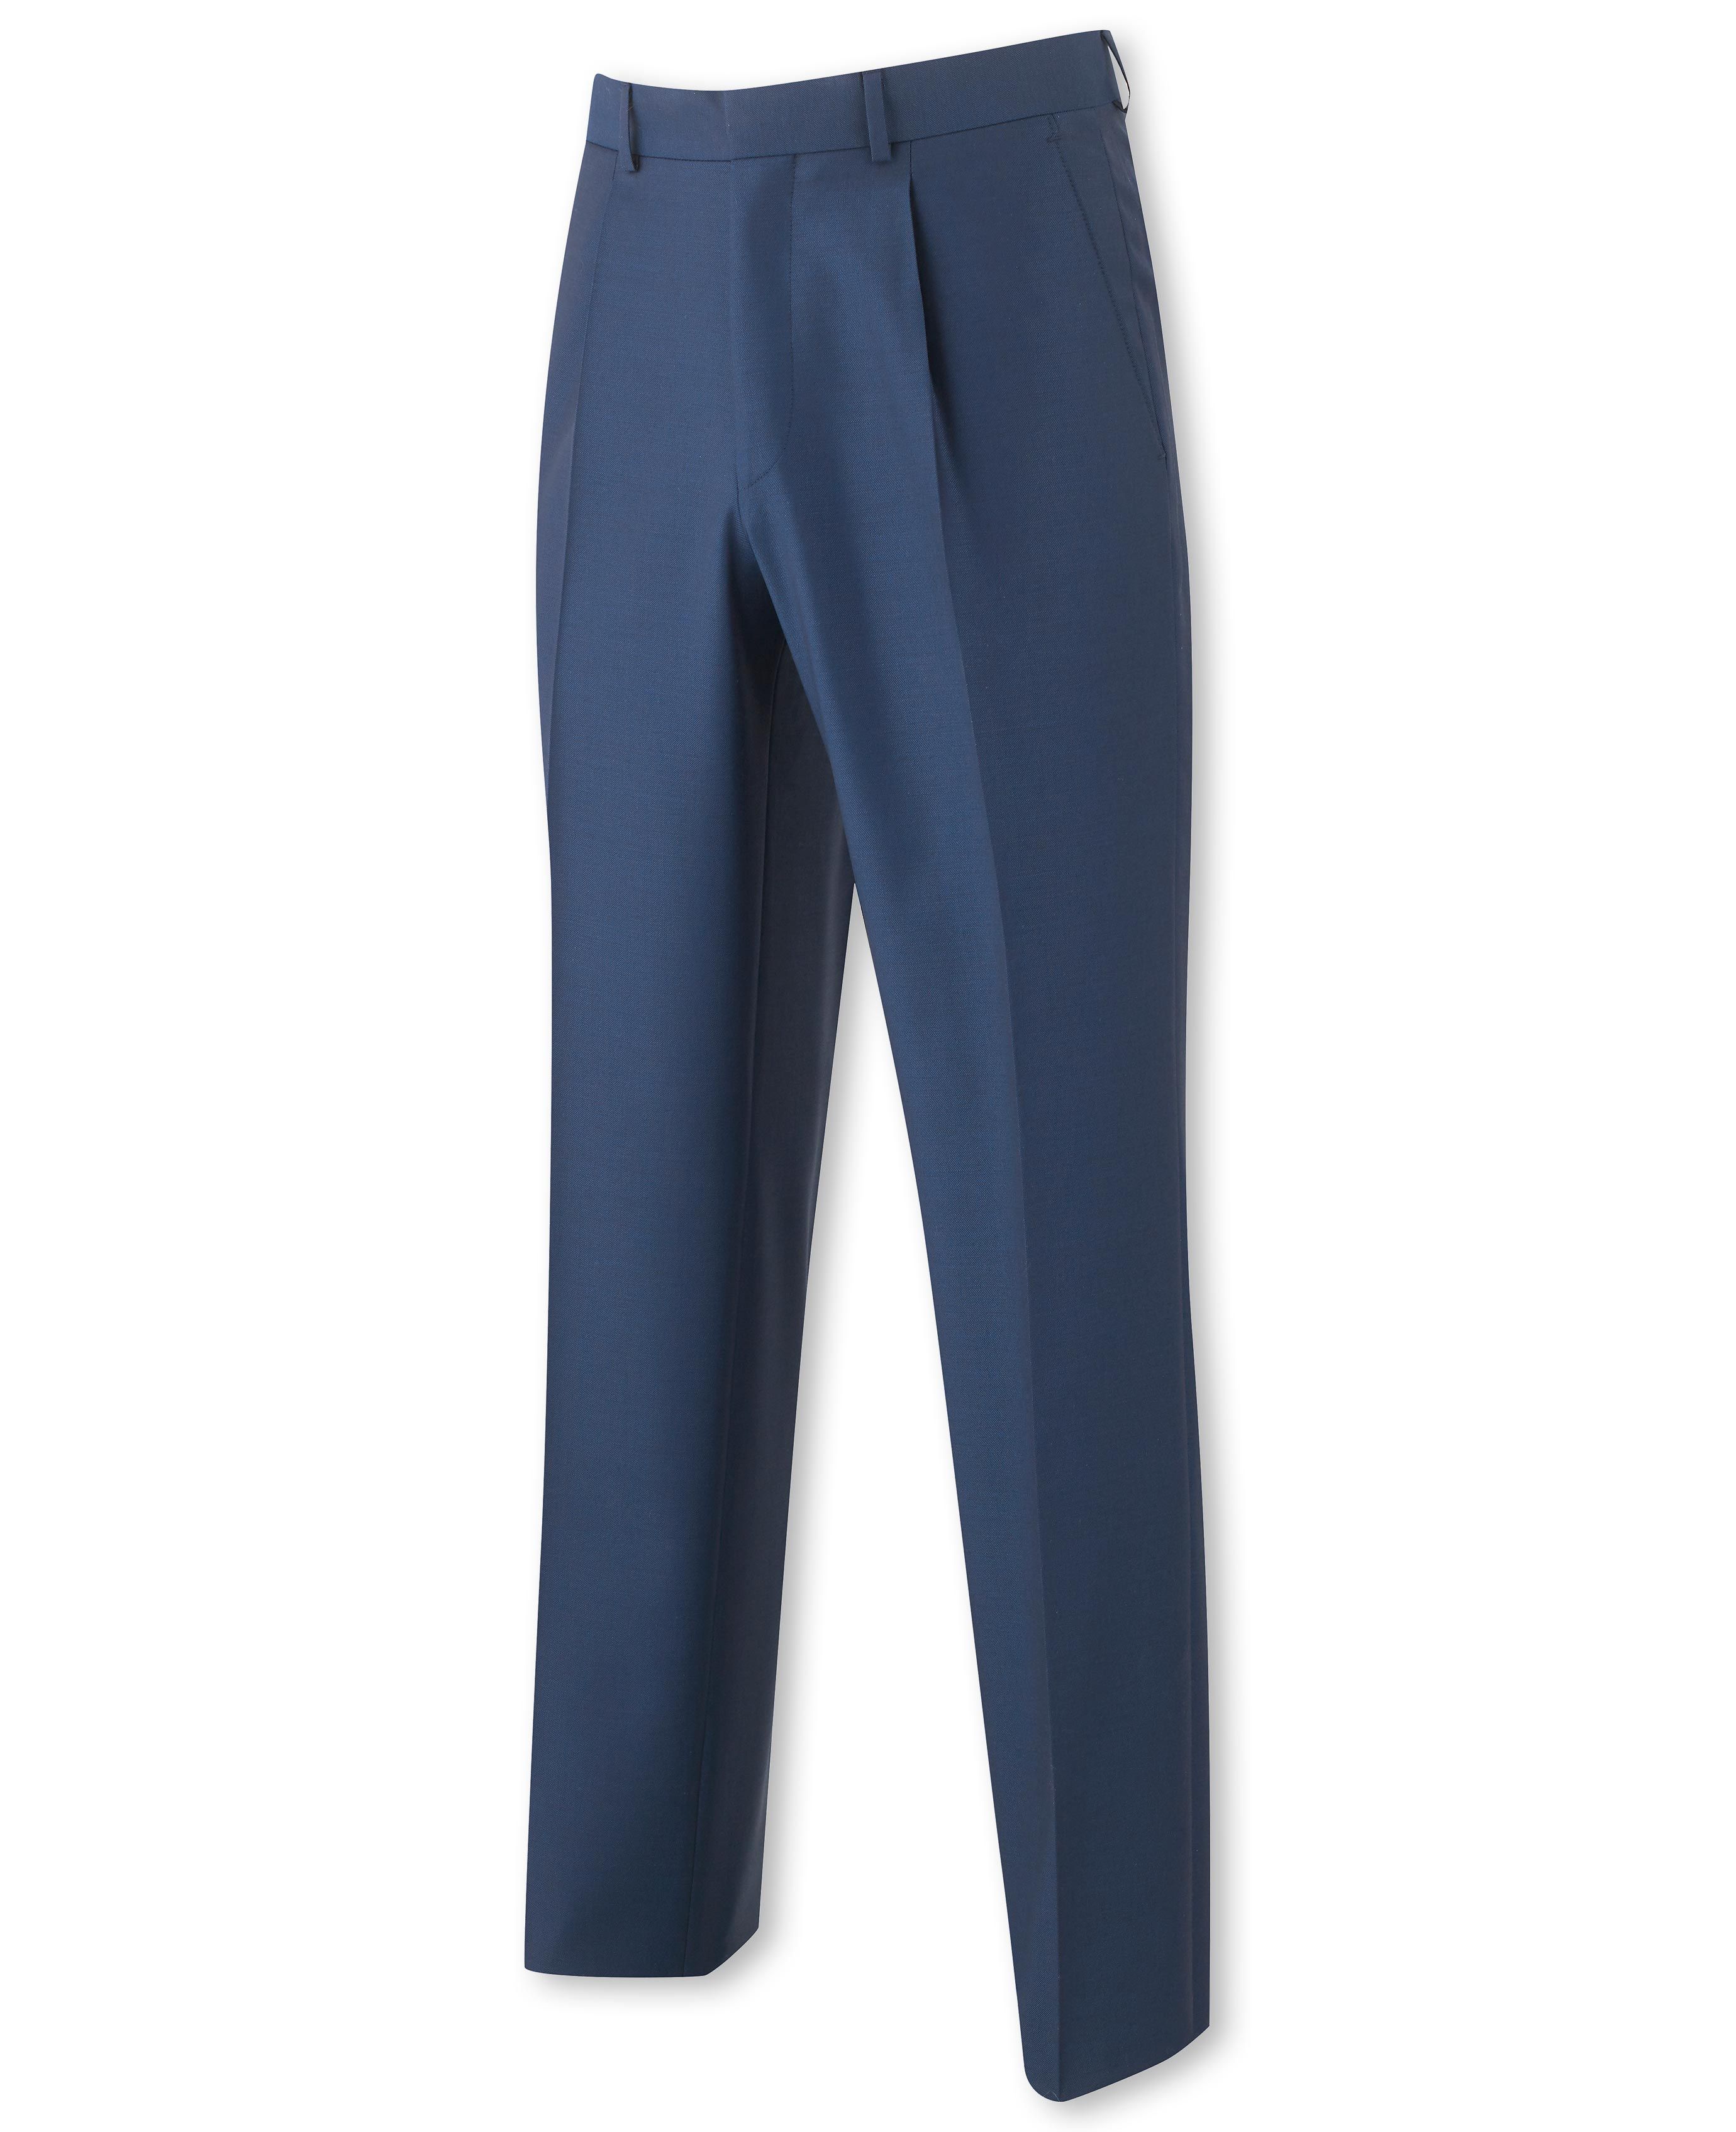 Navy Blue Navy Blue Trouser by Ekaksh for rent online | FLYROBE